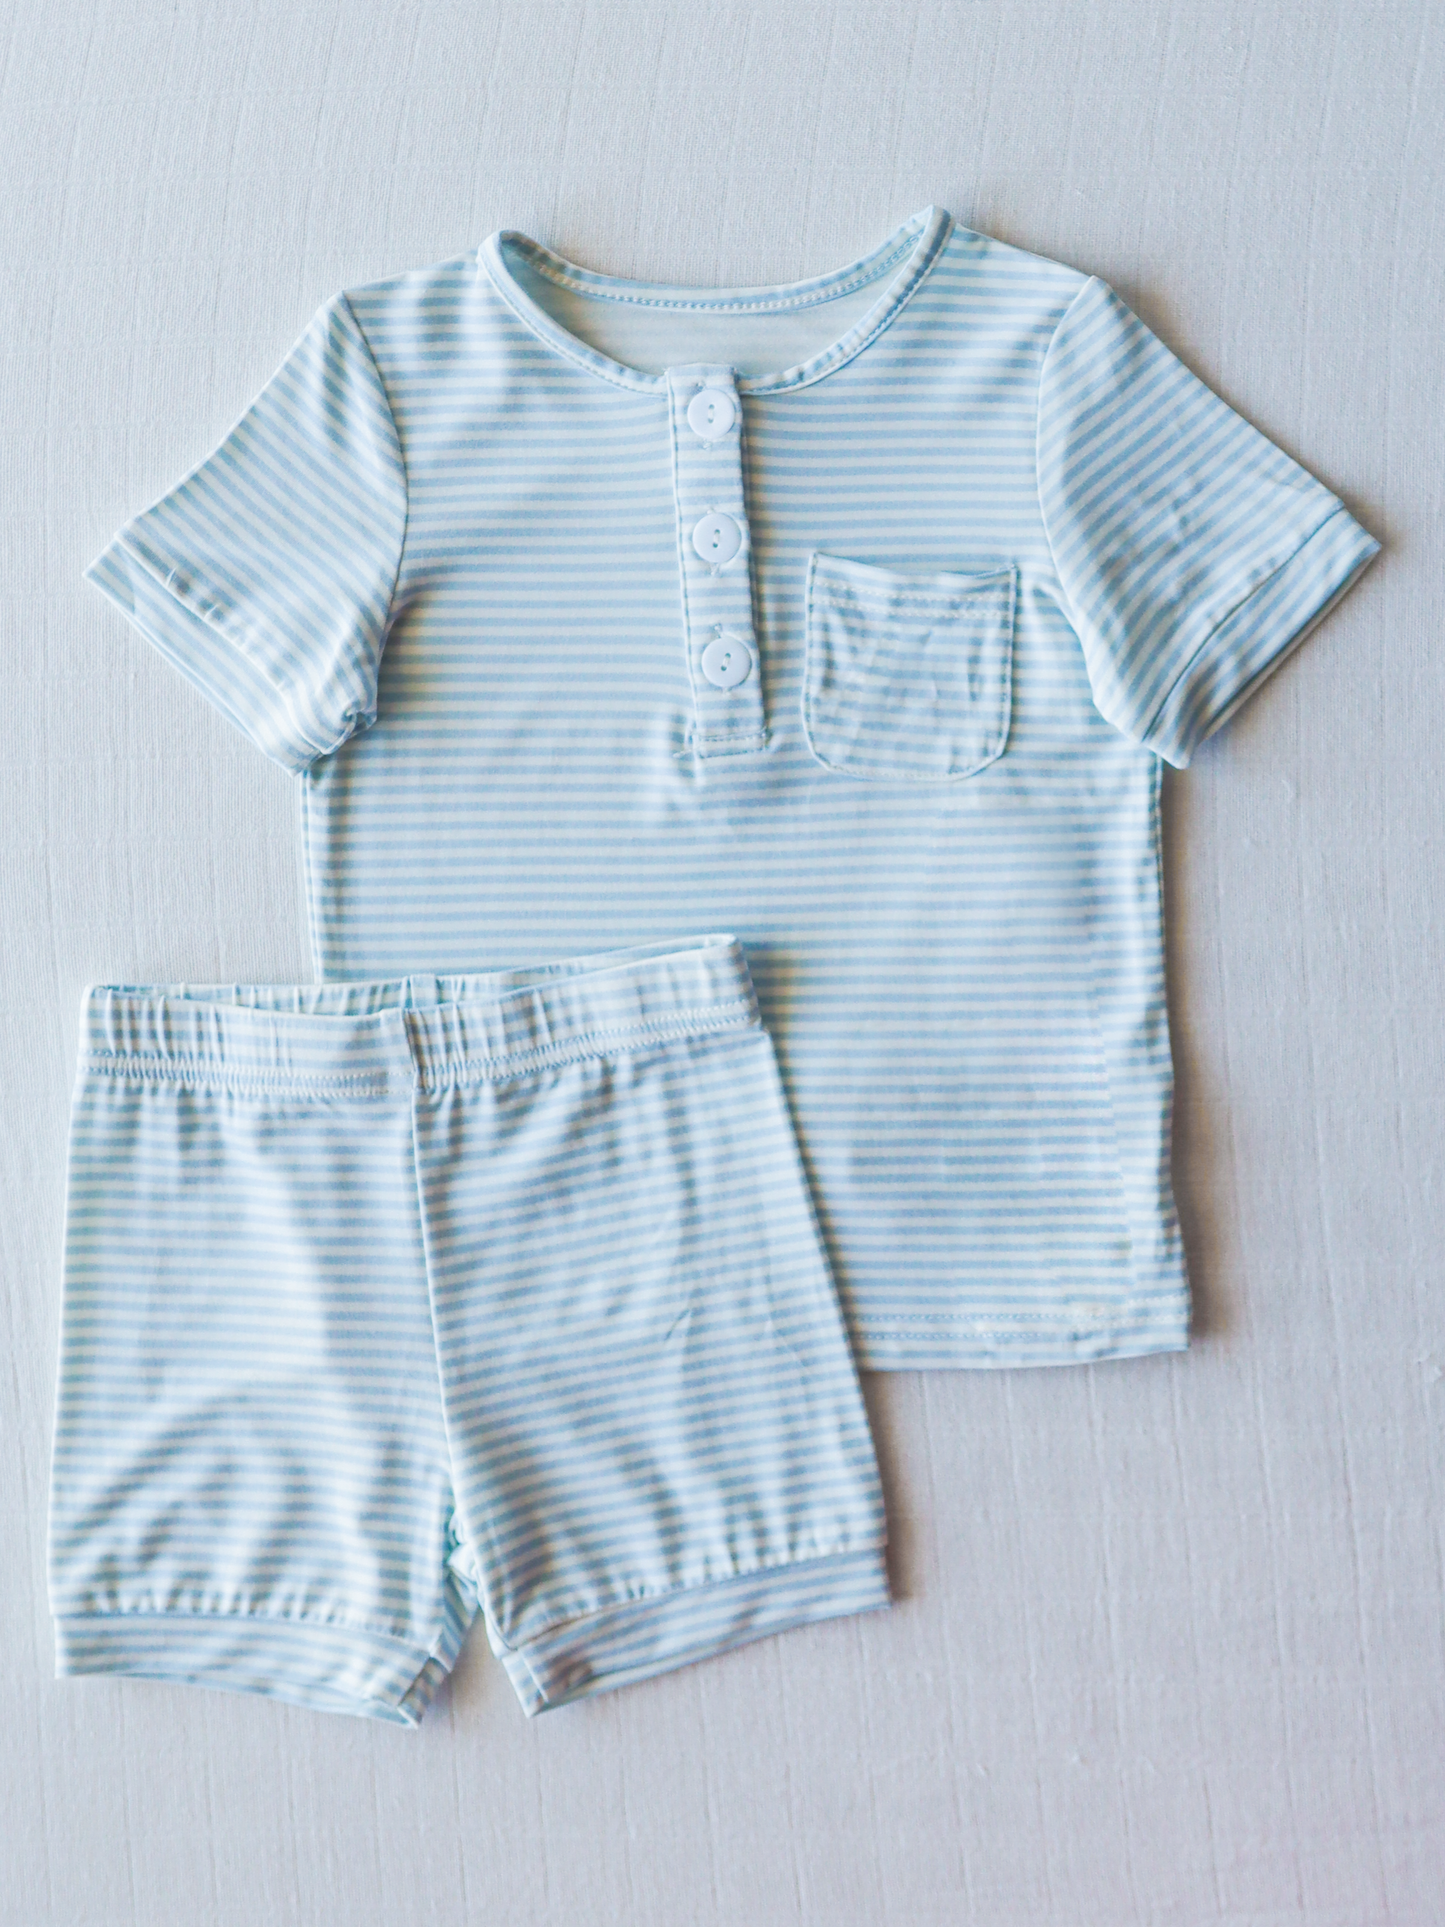 Cloud Short Set Pajamas - Sky Blue Stripes